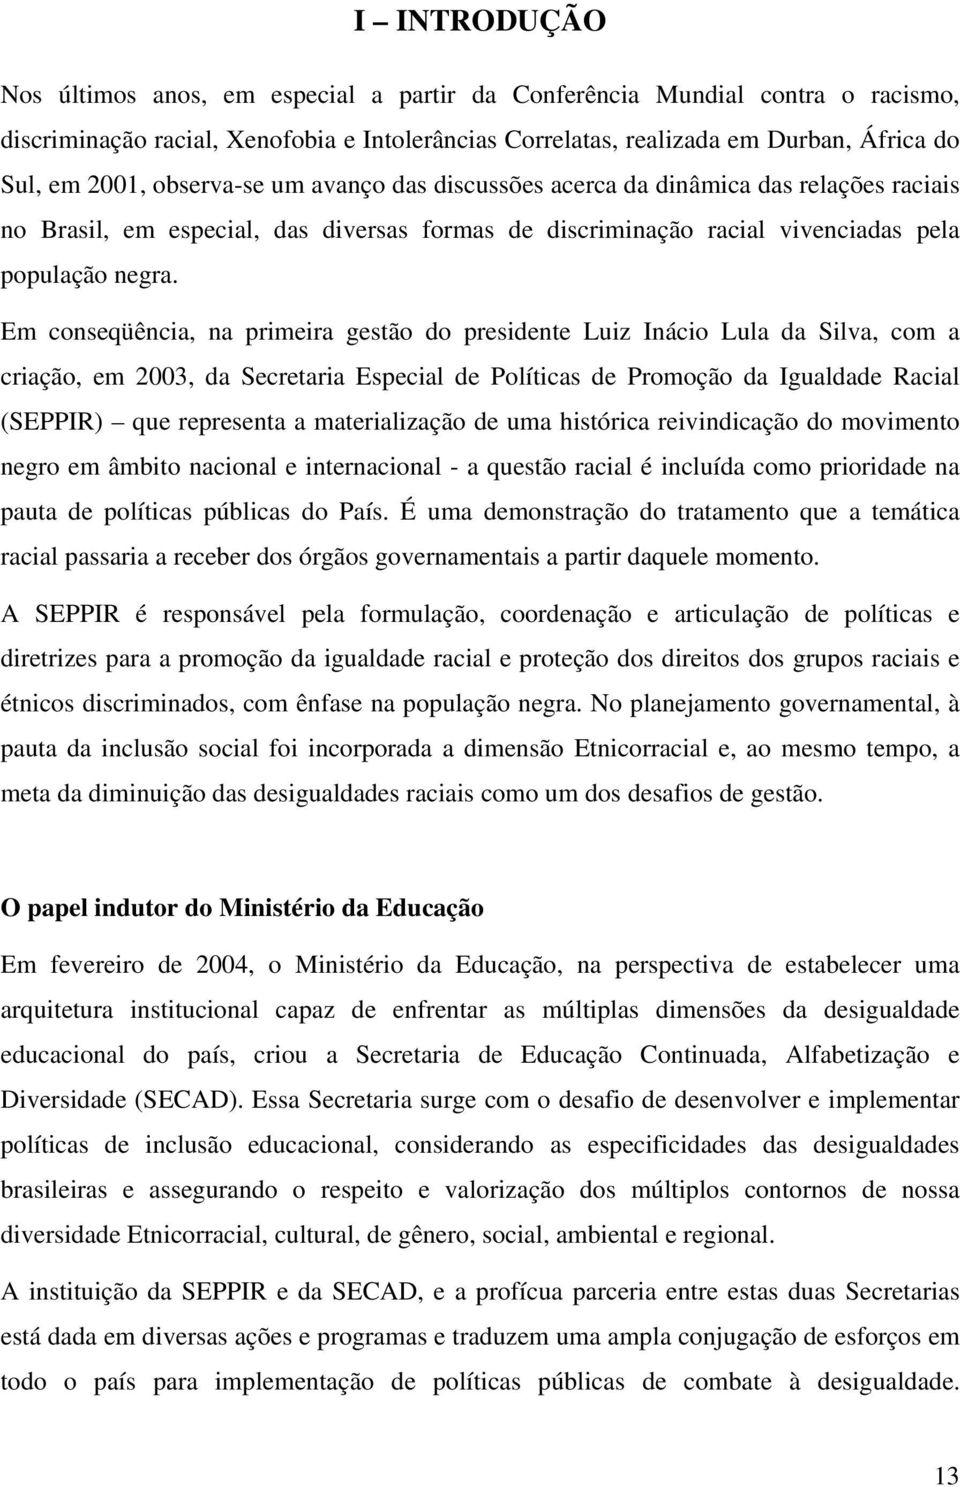 Em conseqüência, na primeira gestão do presidente Luiz Inácio Lula da Silva, com a criação, em 2003, da Secretaria Especial de Políticas de Promoção da Igualdade Racial (SEPPIR) que representa a